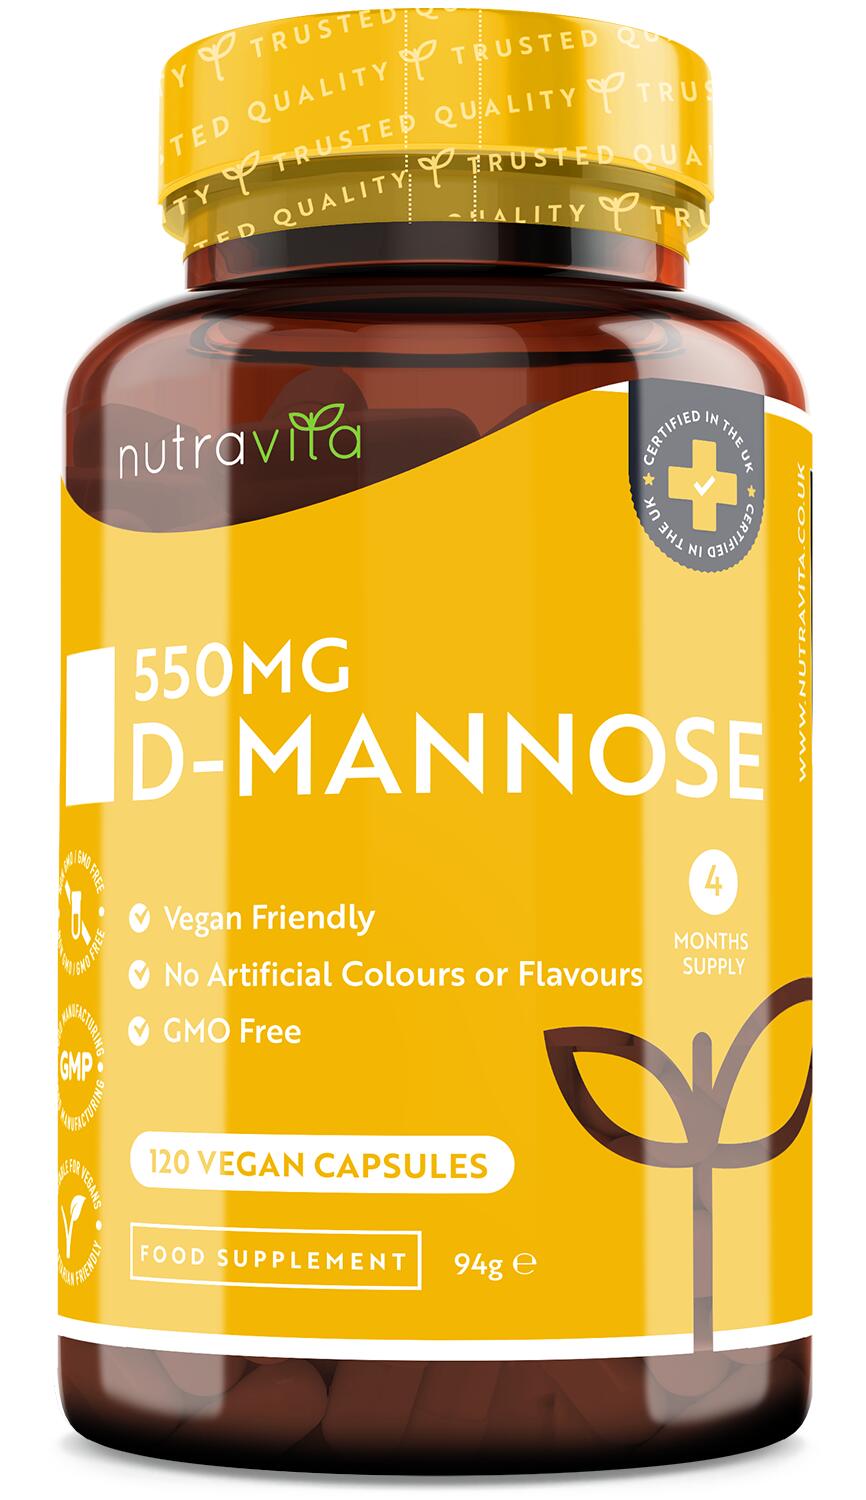 NUTRAVITA Nutravita D-Mannose 1650mg - 180 Vegan Capsules